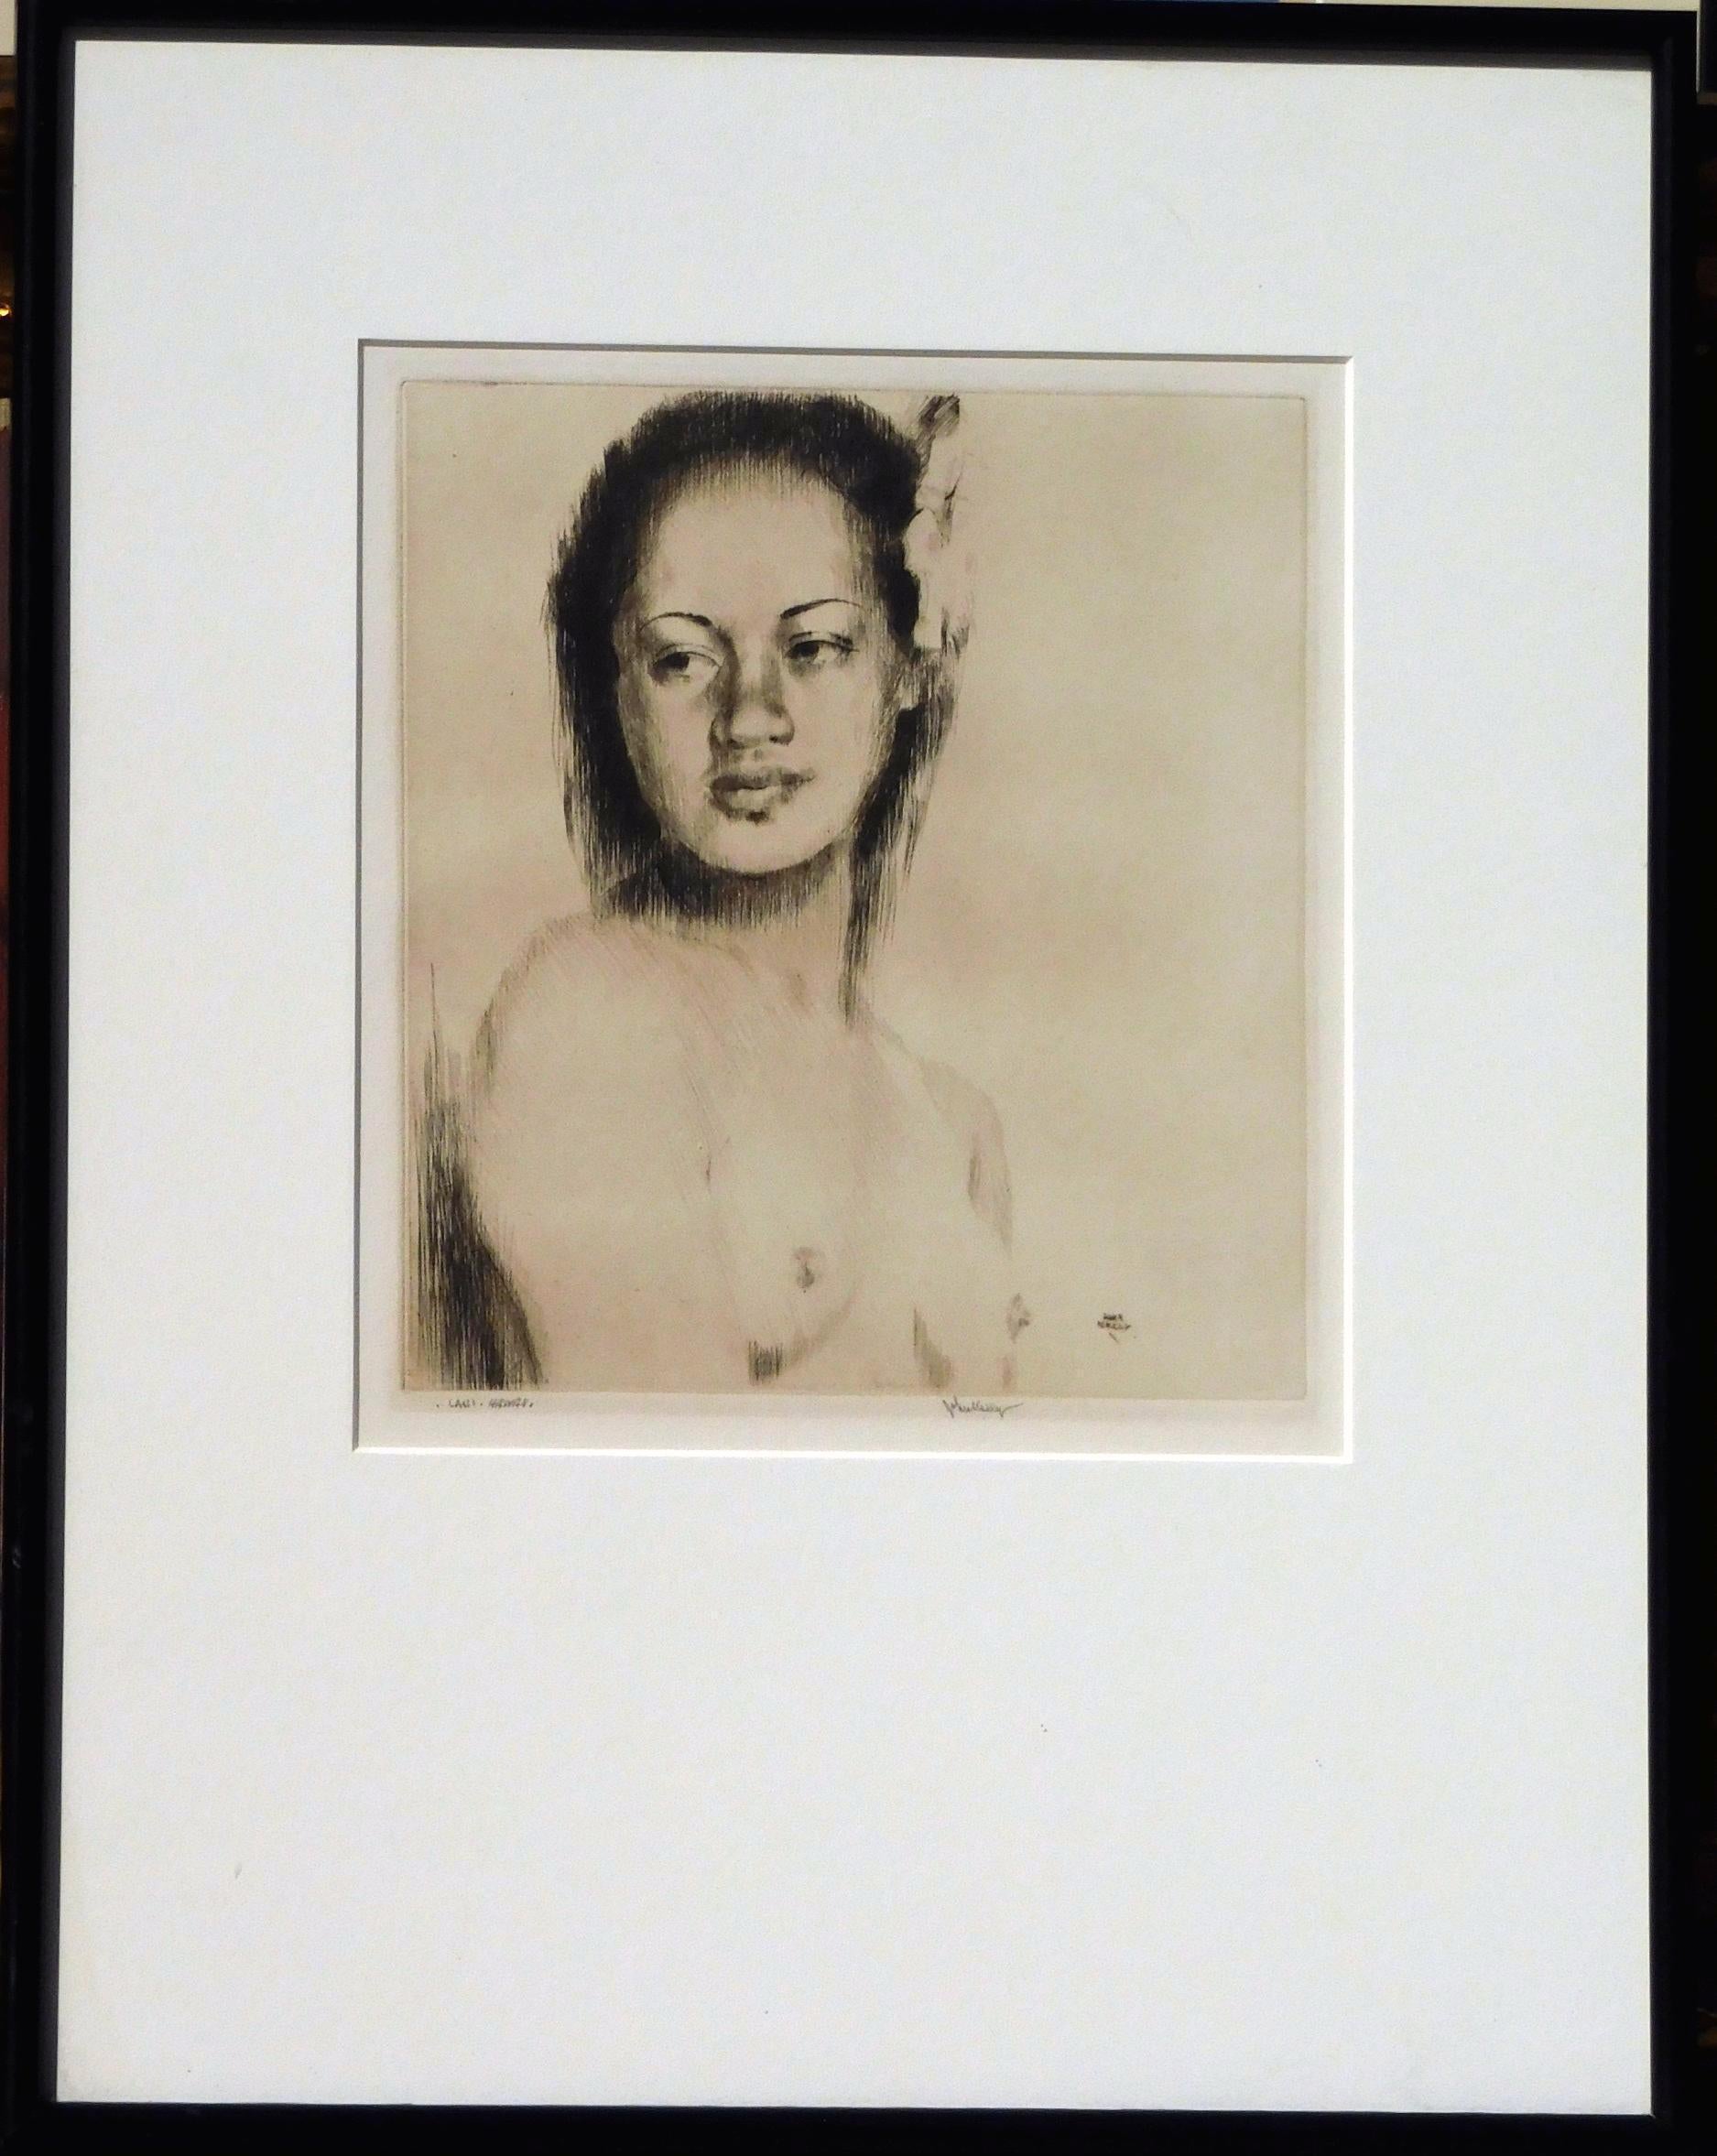 John Melville Kelly Kaltnadelradierung - hawaiianisches weibliches Motiv, ca. 1930-1940er Jahre.
Rechts unten mit Bleistift signiert, John Kelly. Unten links mit Bleistift betitelt 